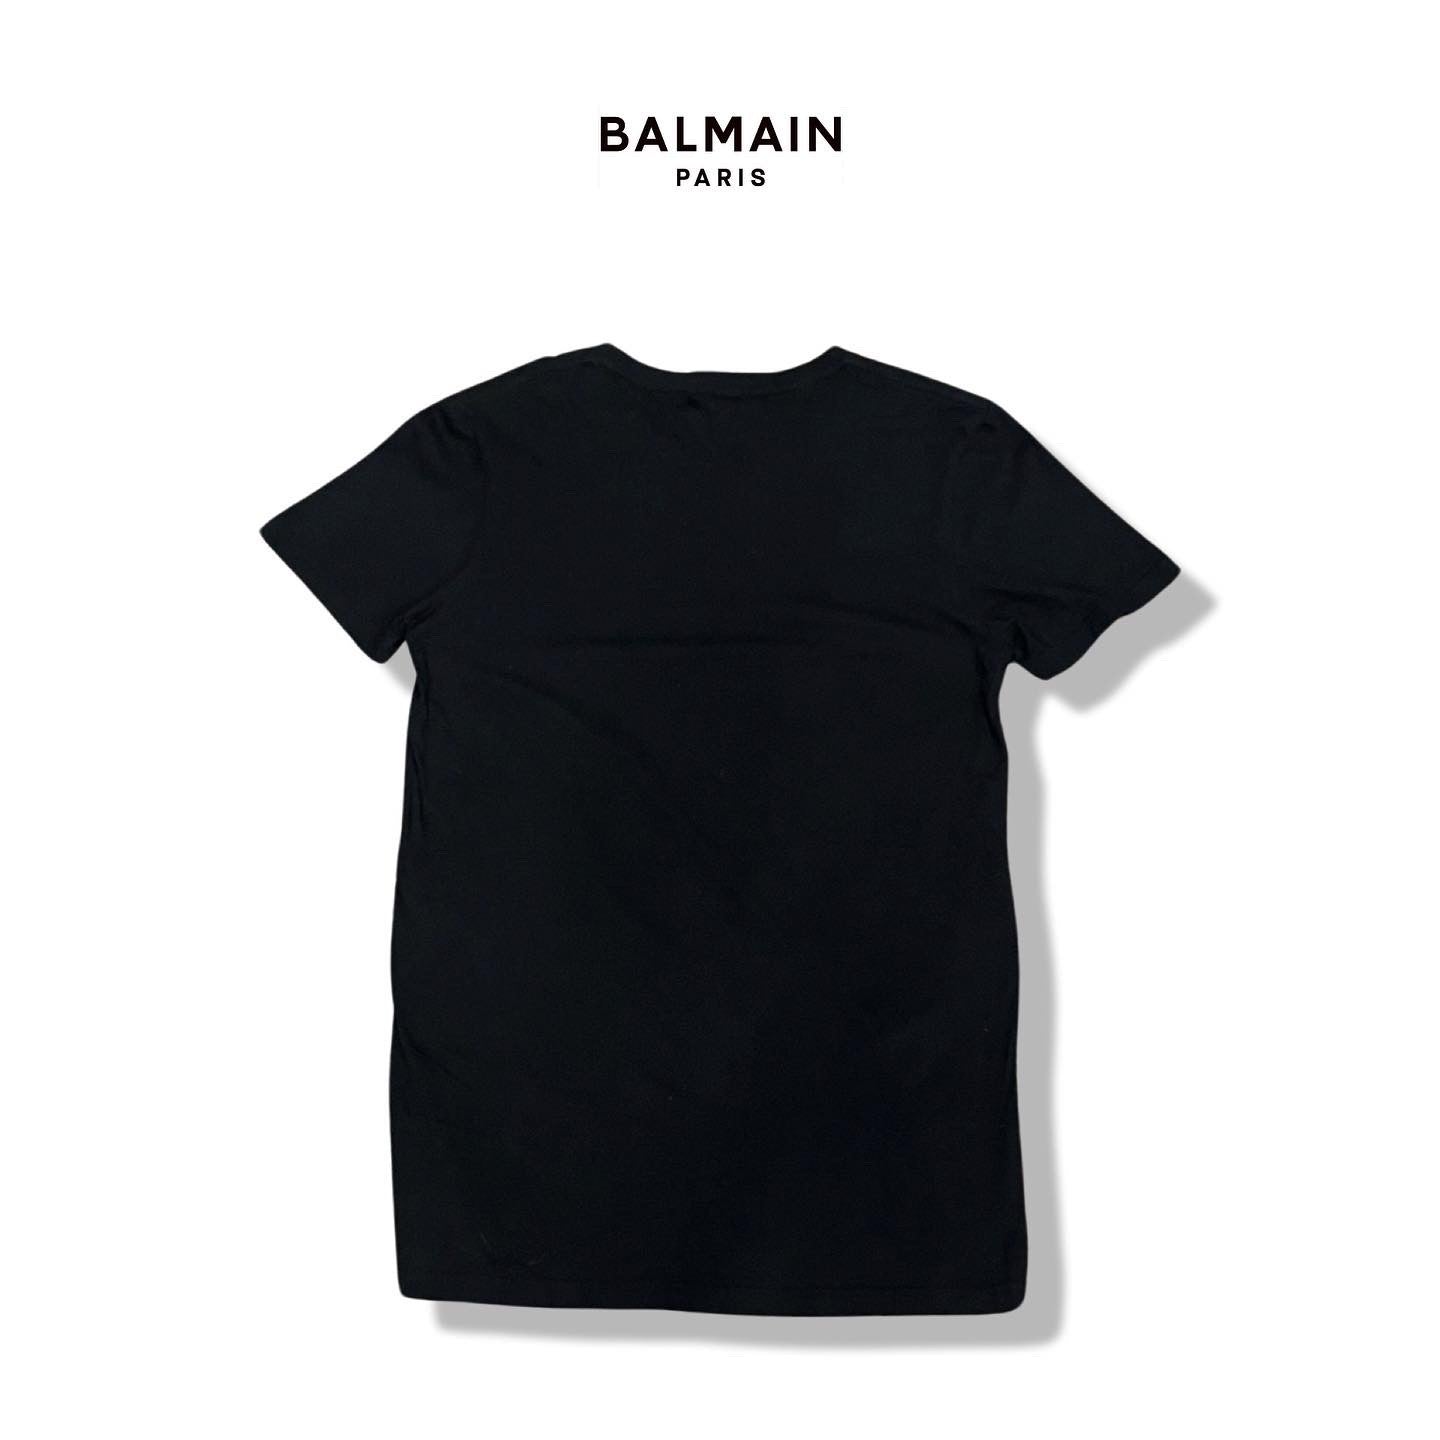 Balmain t shirts